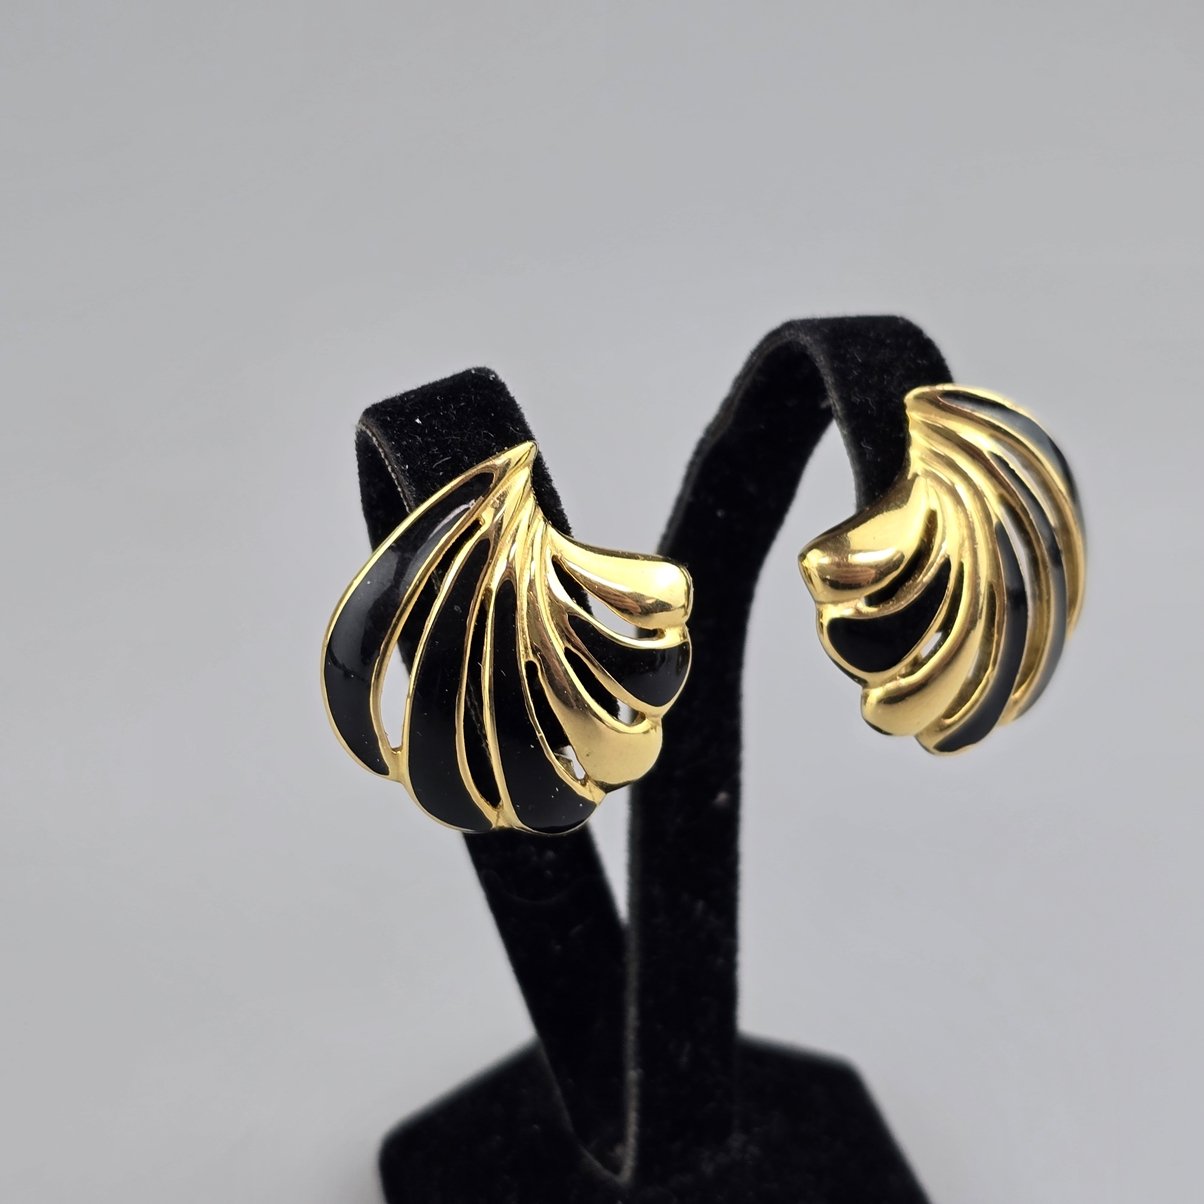 Ein Paar Vintage-Ohrclips - MONET / USA, nach 1955, Metall vergoldet, glanzpoliert, durchbrochen mu - Image 2 of 3